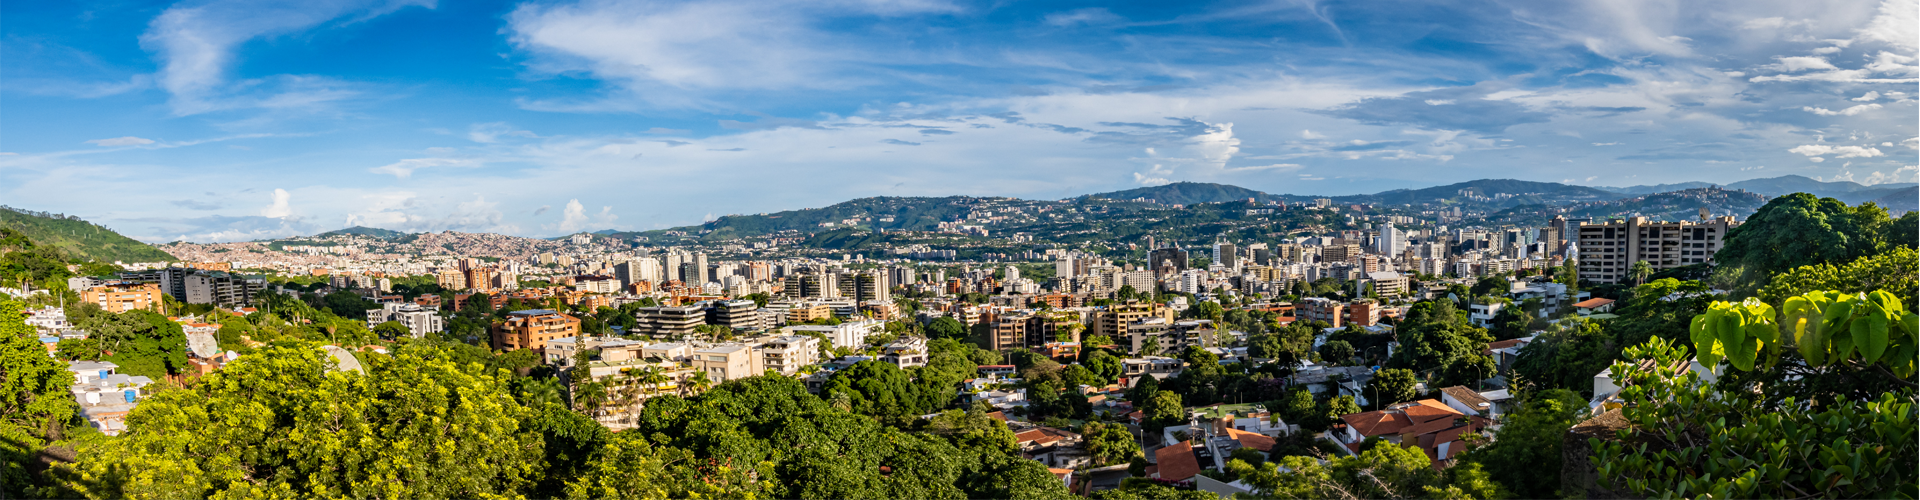 Caracas Skyline